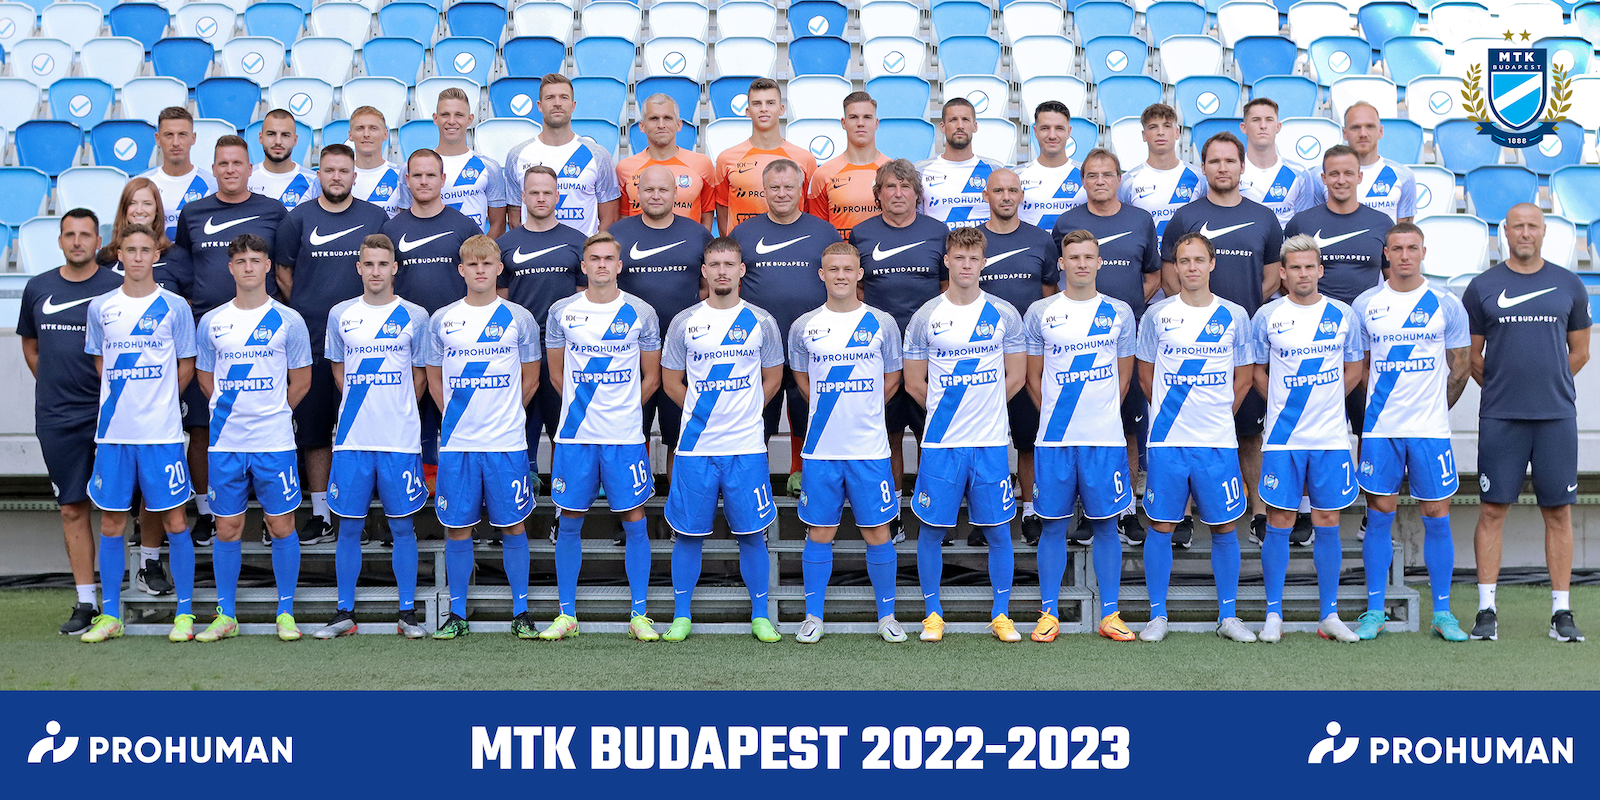 Letölthető a 2022/23-as szezon hivatalos csapatképe